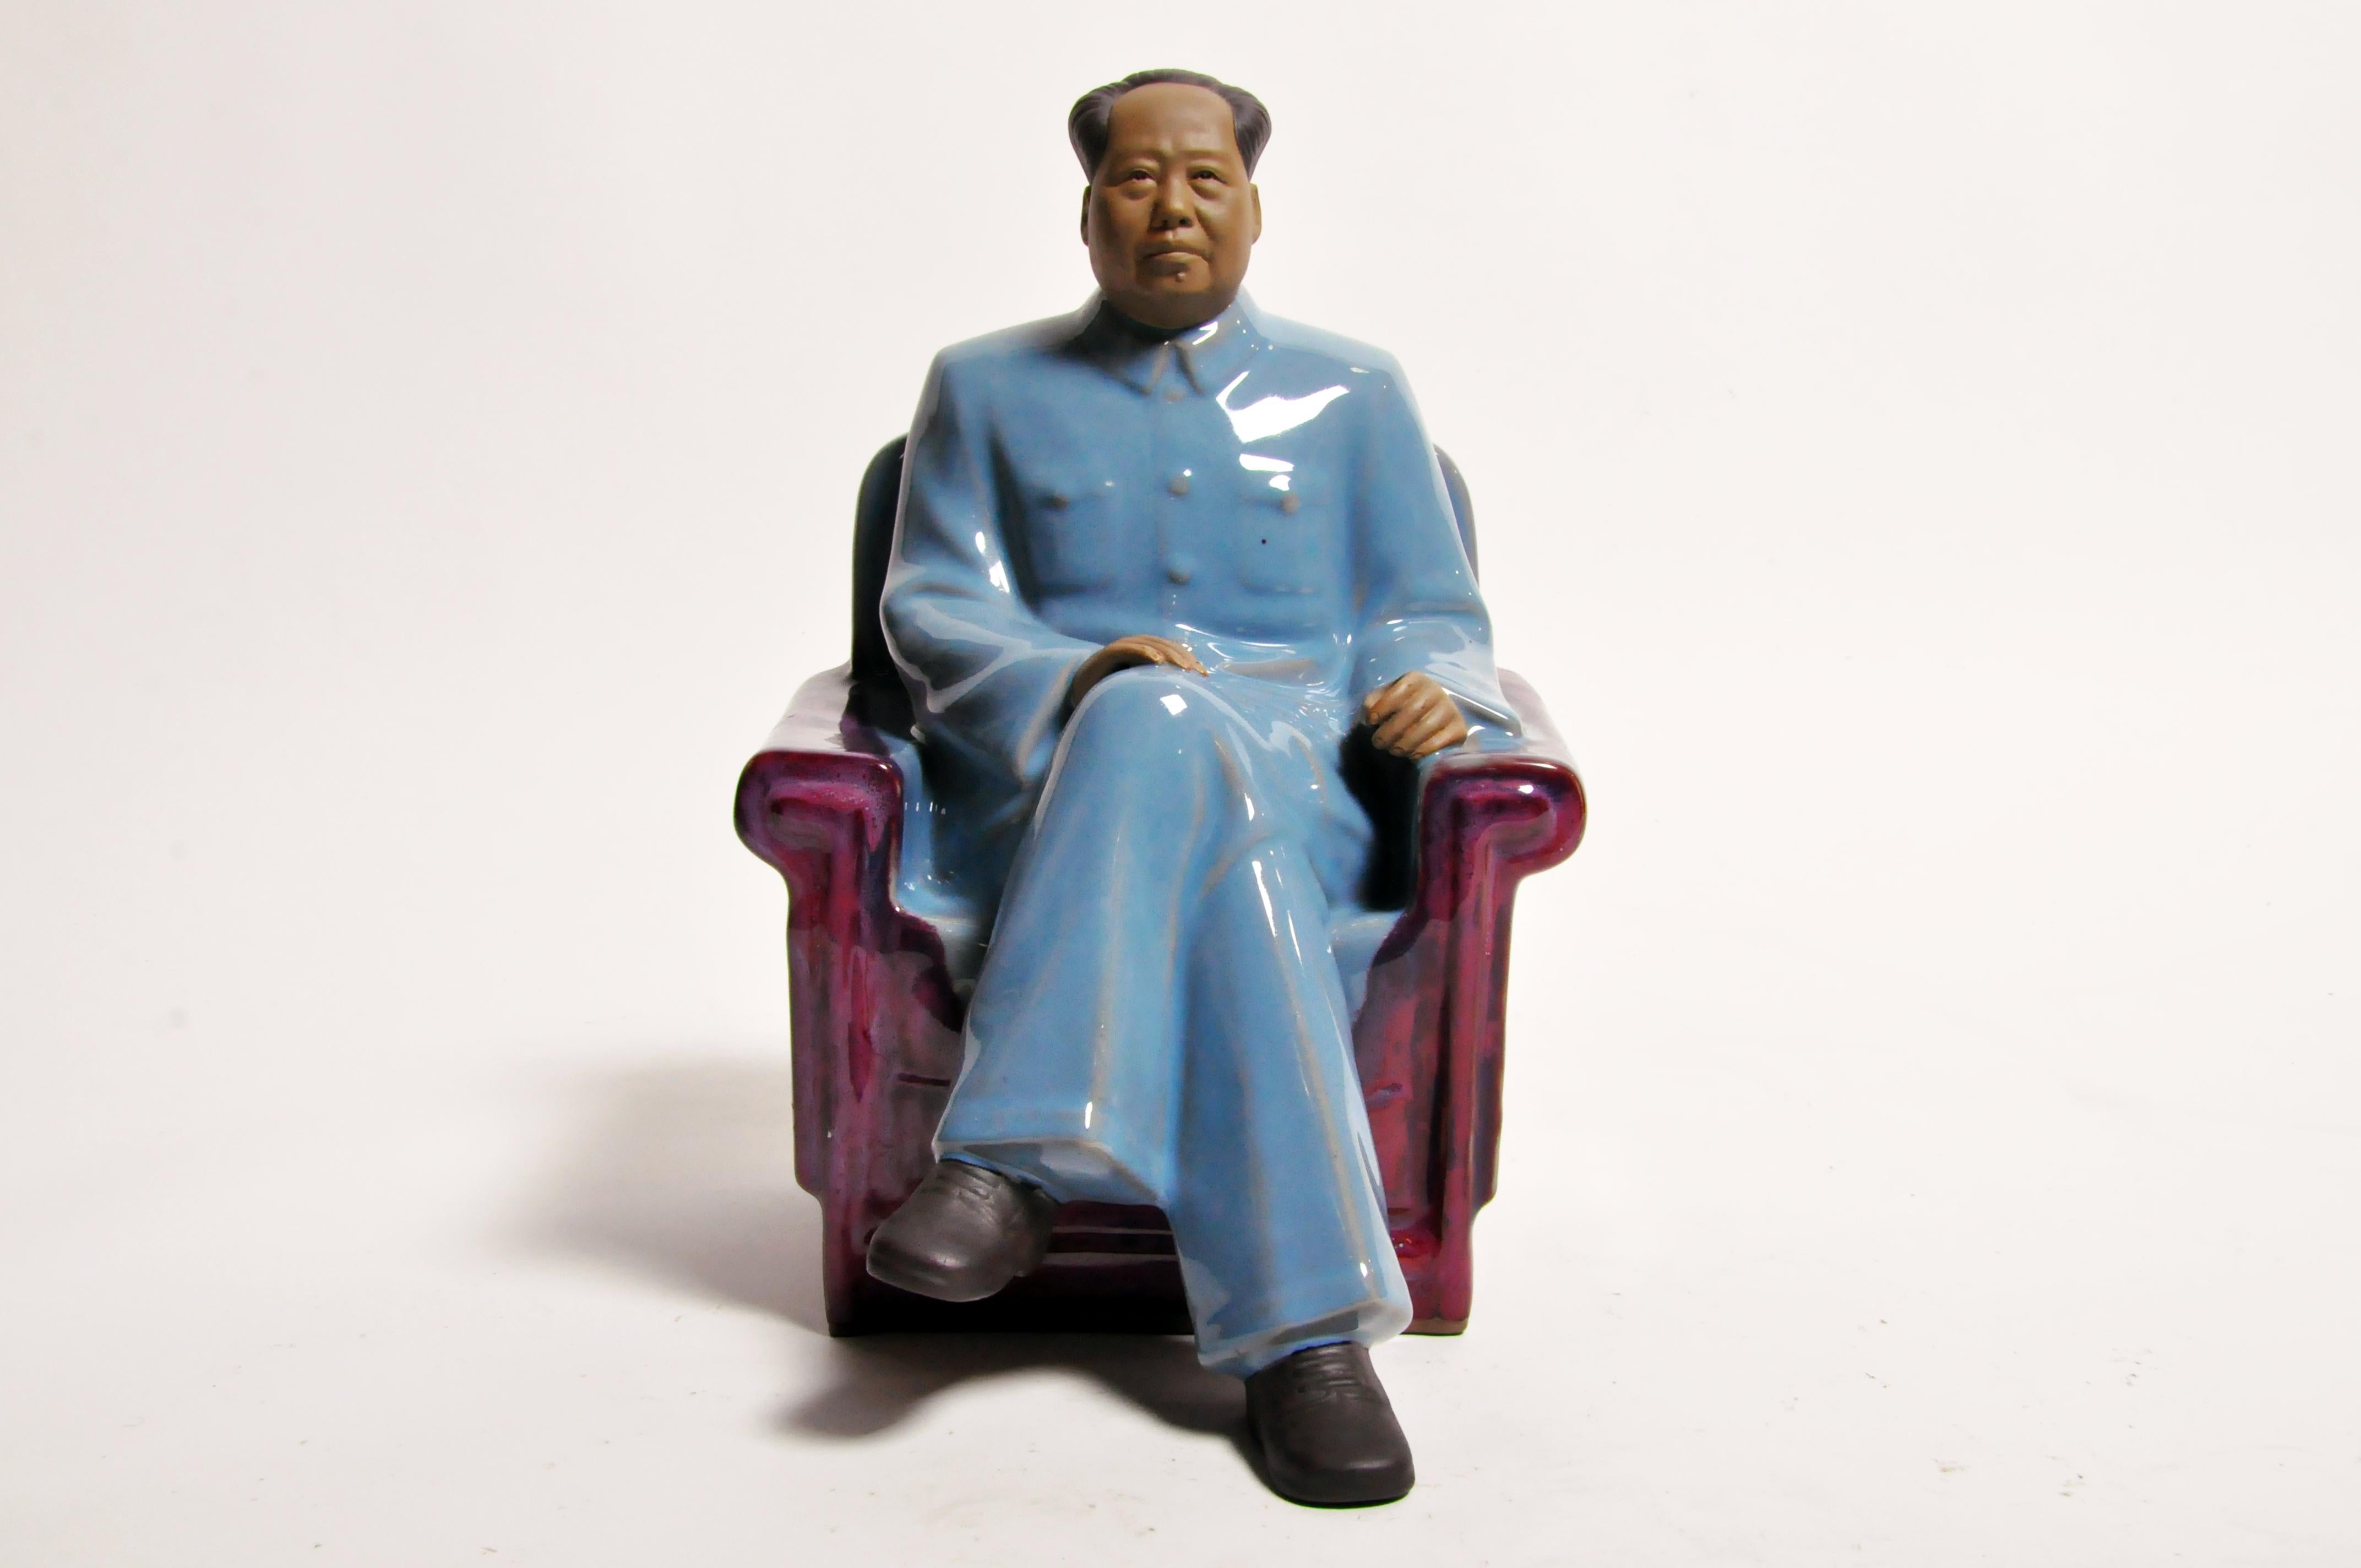 Asian Ceramic Sculpture of Chairman Mao Zedong